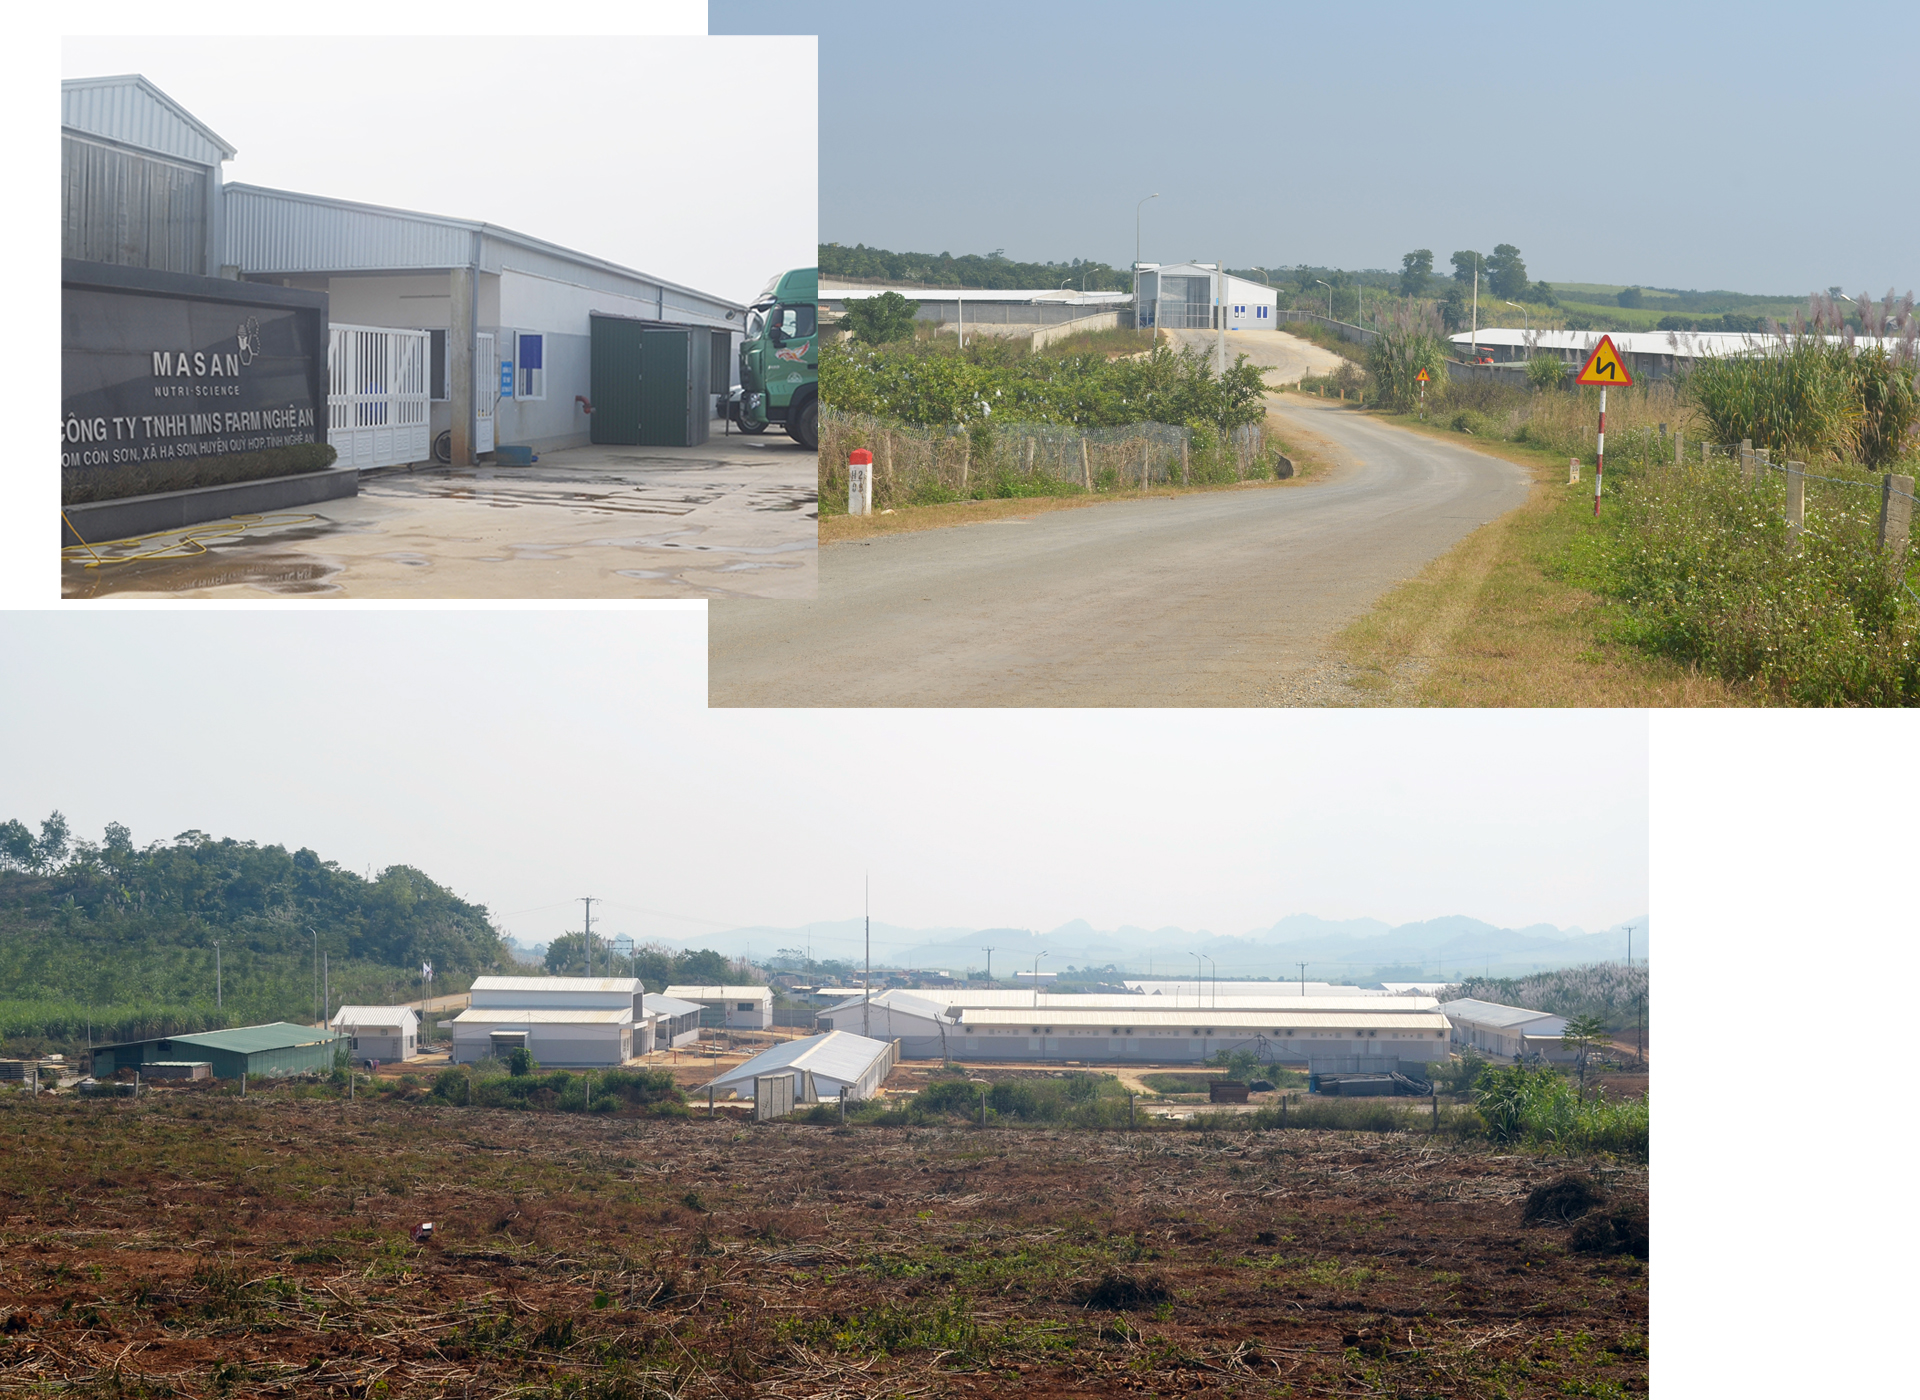 Ảnh trái sang, trên xuống: Cổng trang trại chăn nuôi,; đường vào khu chăn nuôi S2; khu chăn nuôi S1 đang được đầu tư xây dựng tại xã Hạ Sơn của Công ty MNS FARM Nghệ An.